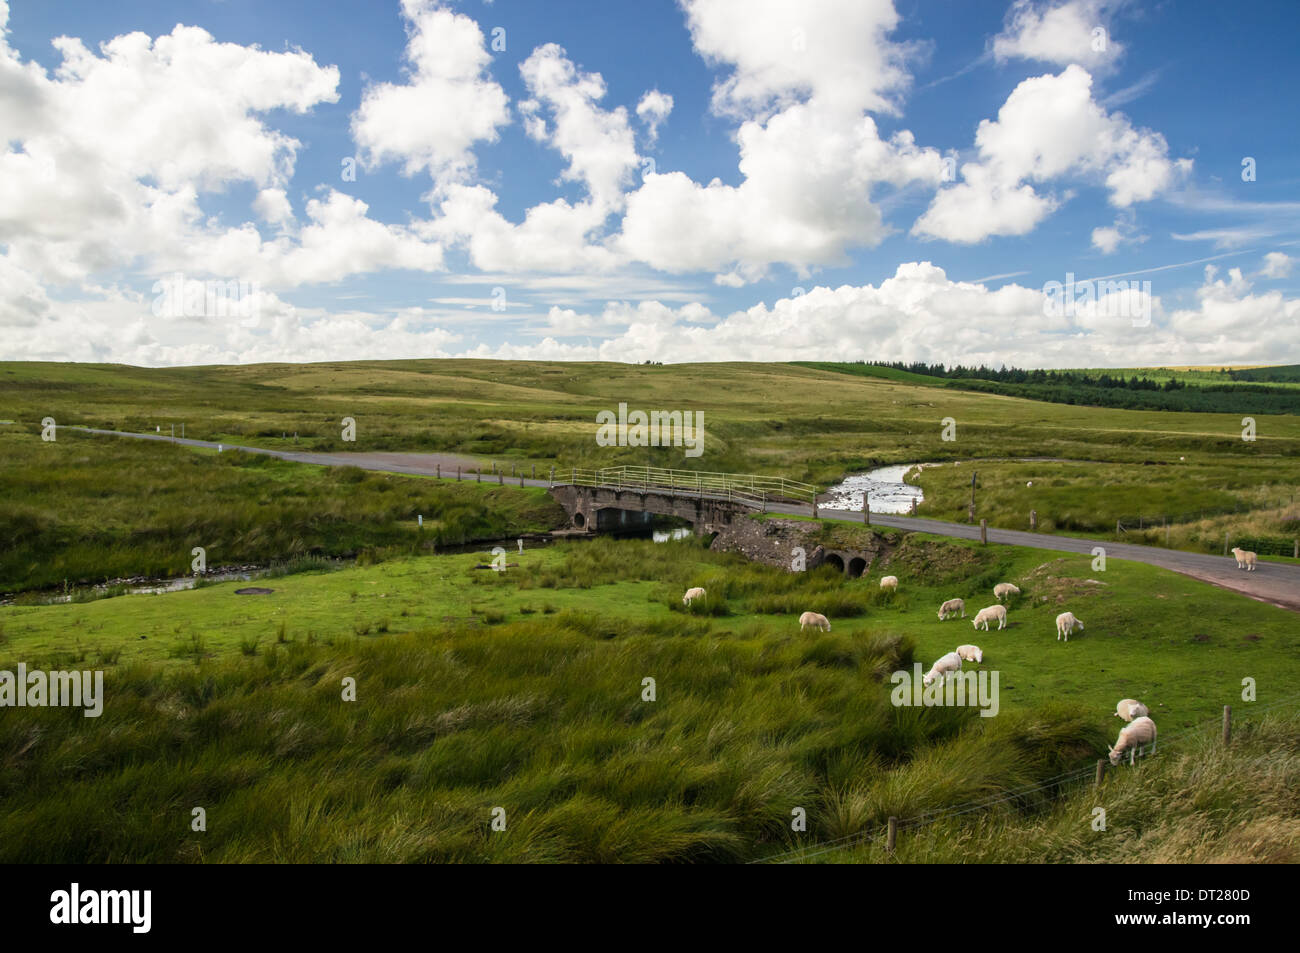 Vue sur le cours d'eau et le pâturage des moutons dans la région des montagnes noires, Brecon Beacons, parc national de Bannau Brycheiniog pays de Galles Royaume-Uni Banque D'Images